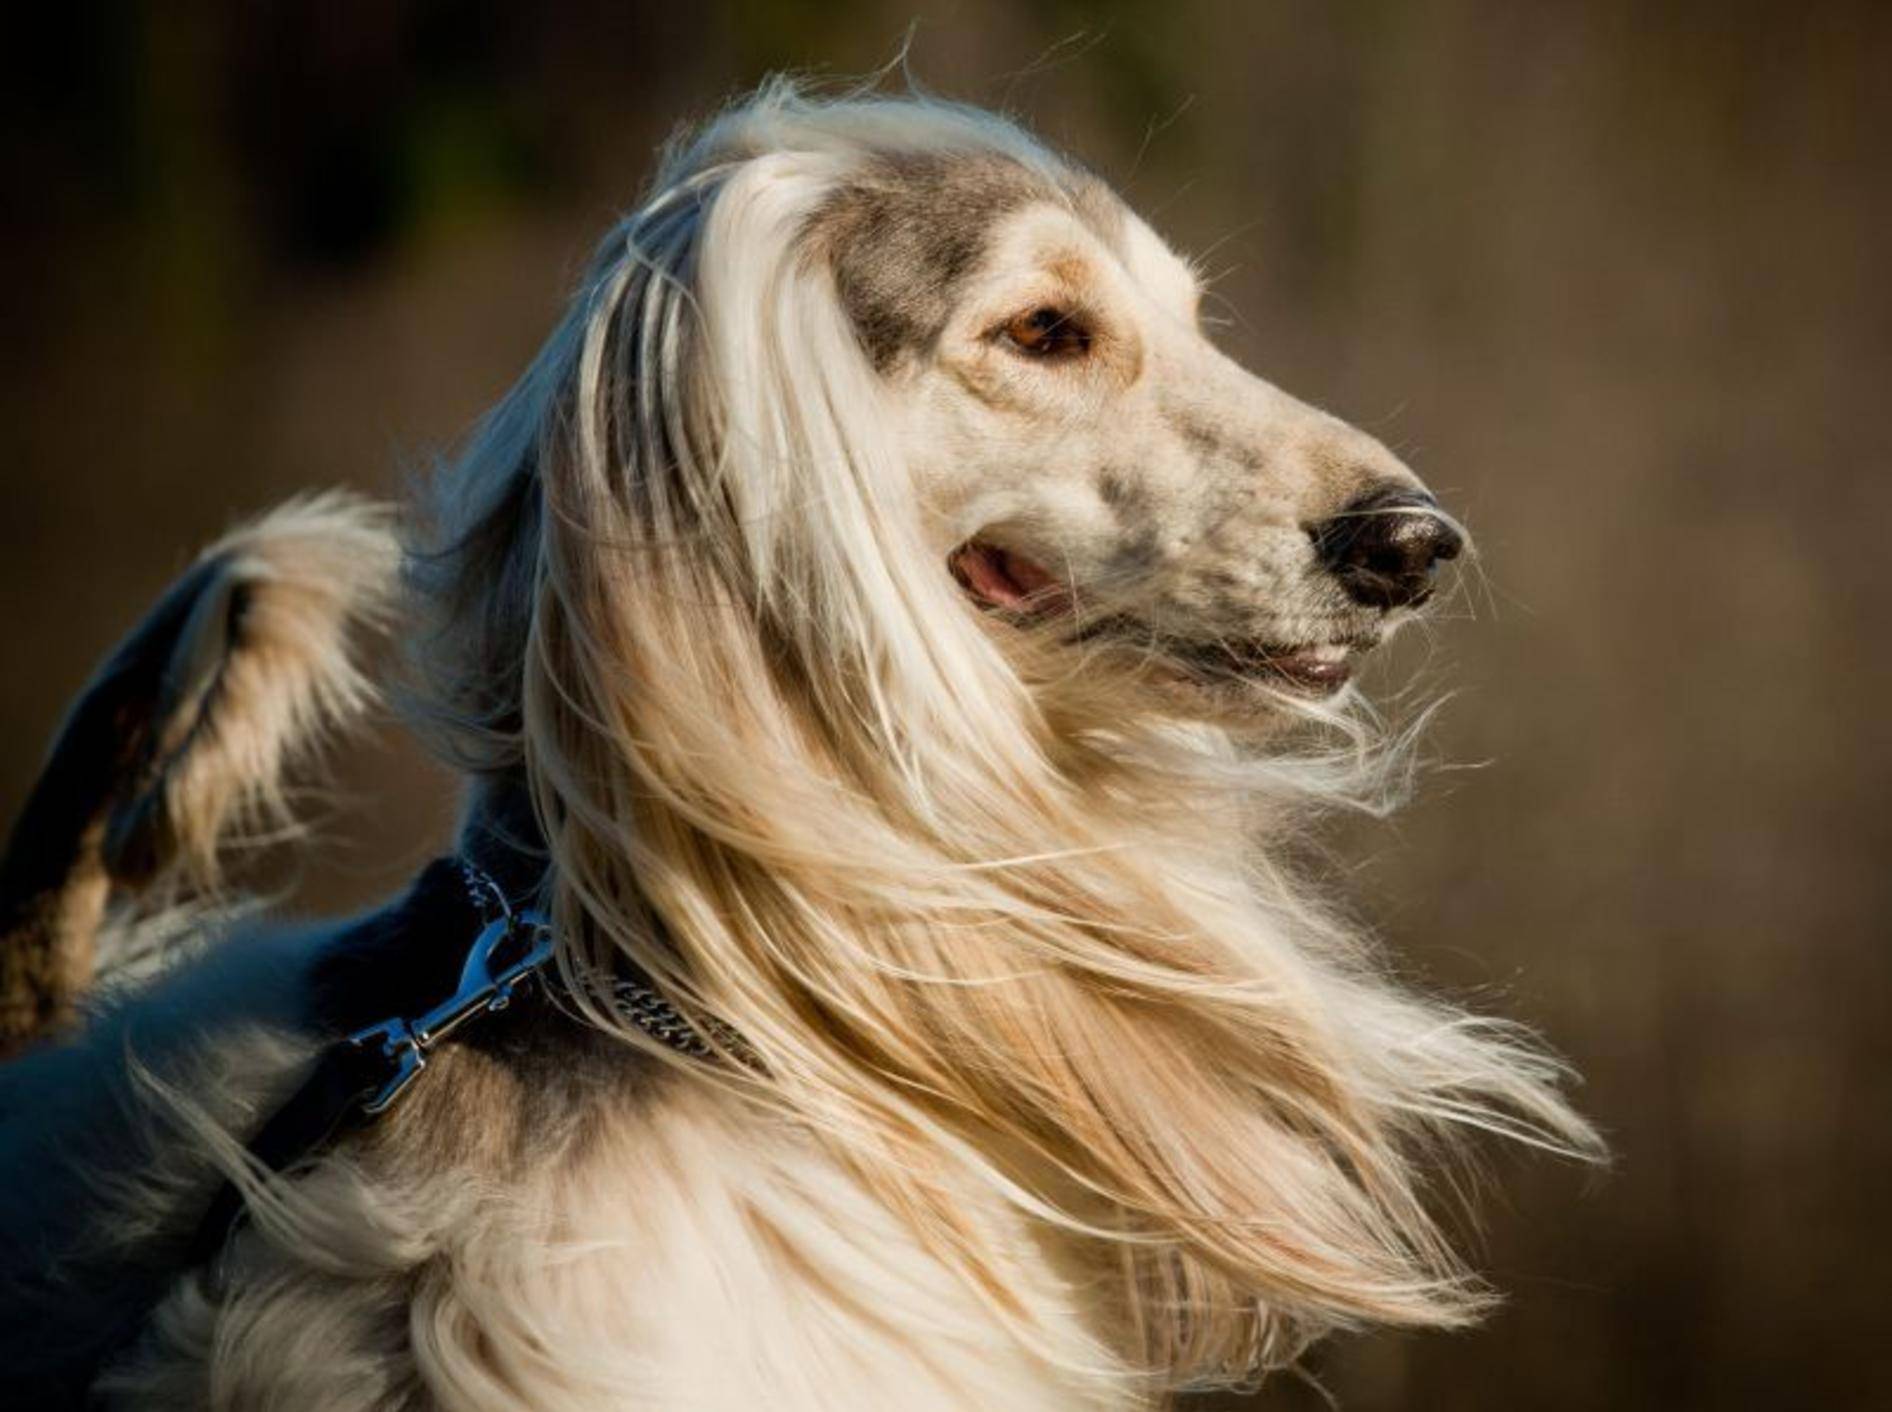 Der Afghanischer Windhund fällt durch ein besonders langes Haarkleid auf — Bild: Shutterstock / mariait